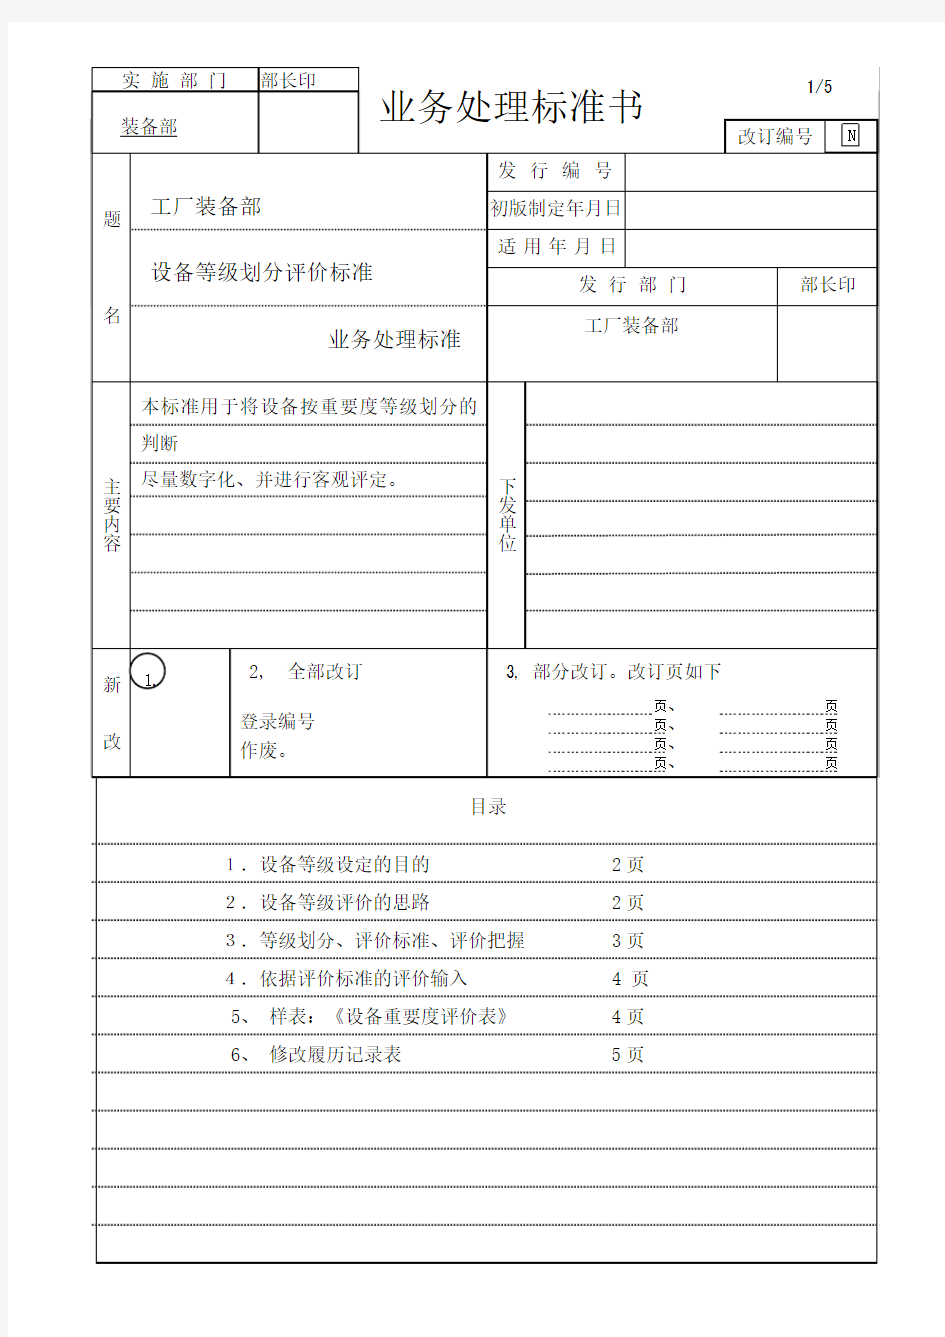 设备等级划分评价标准(中文)